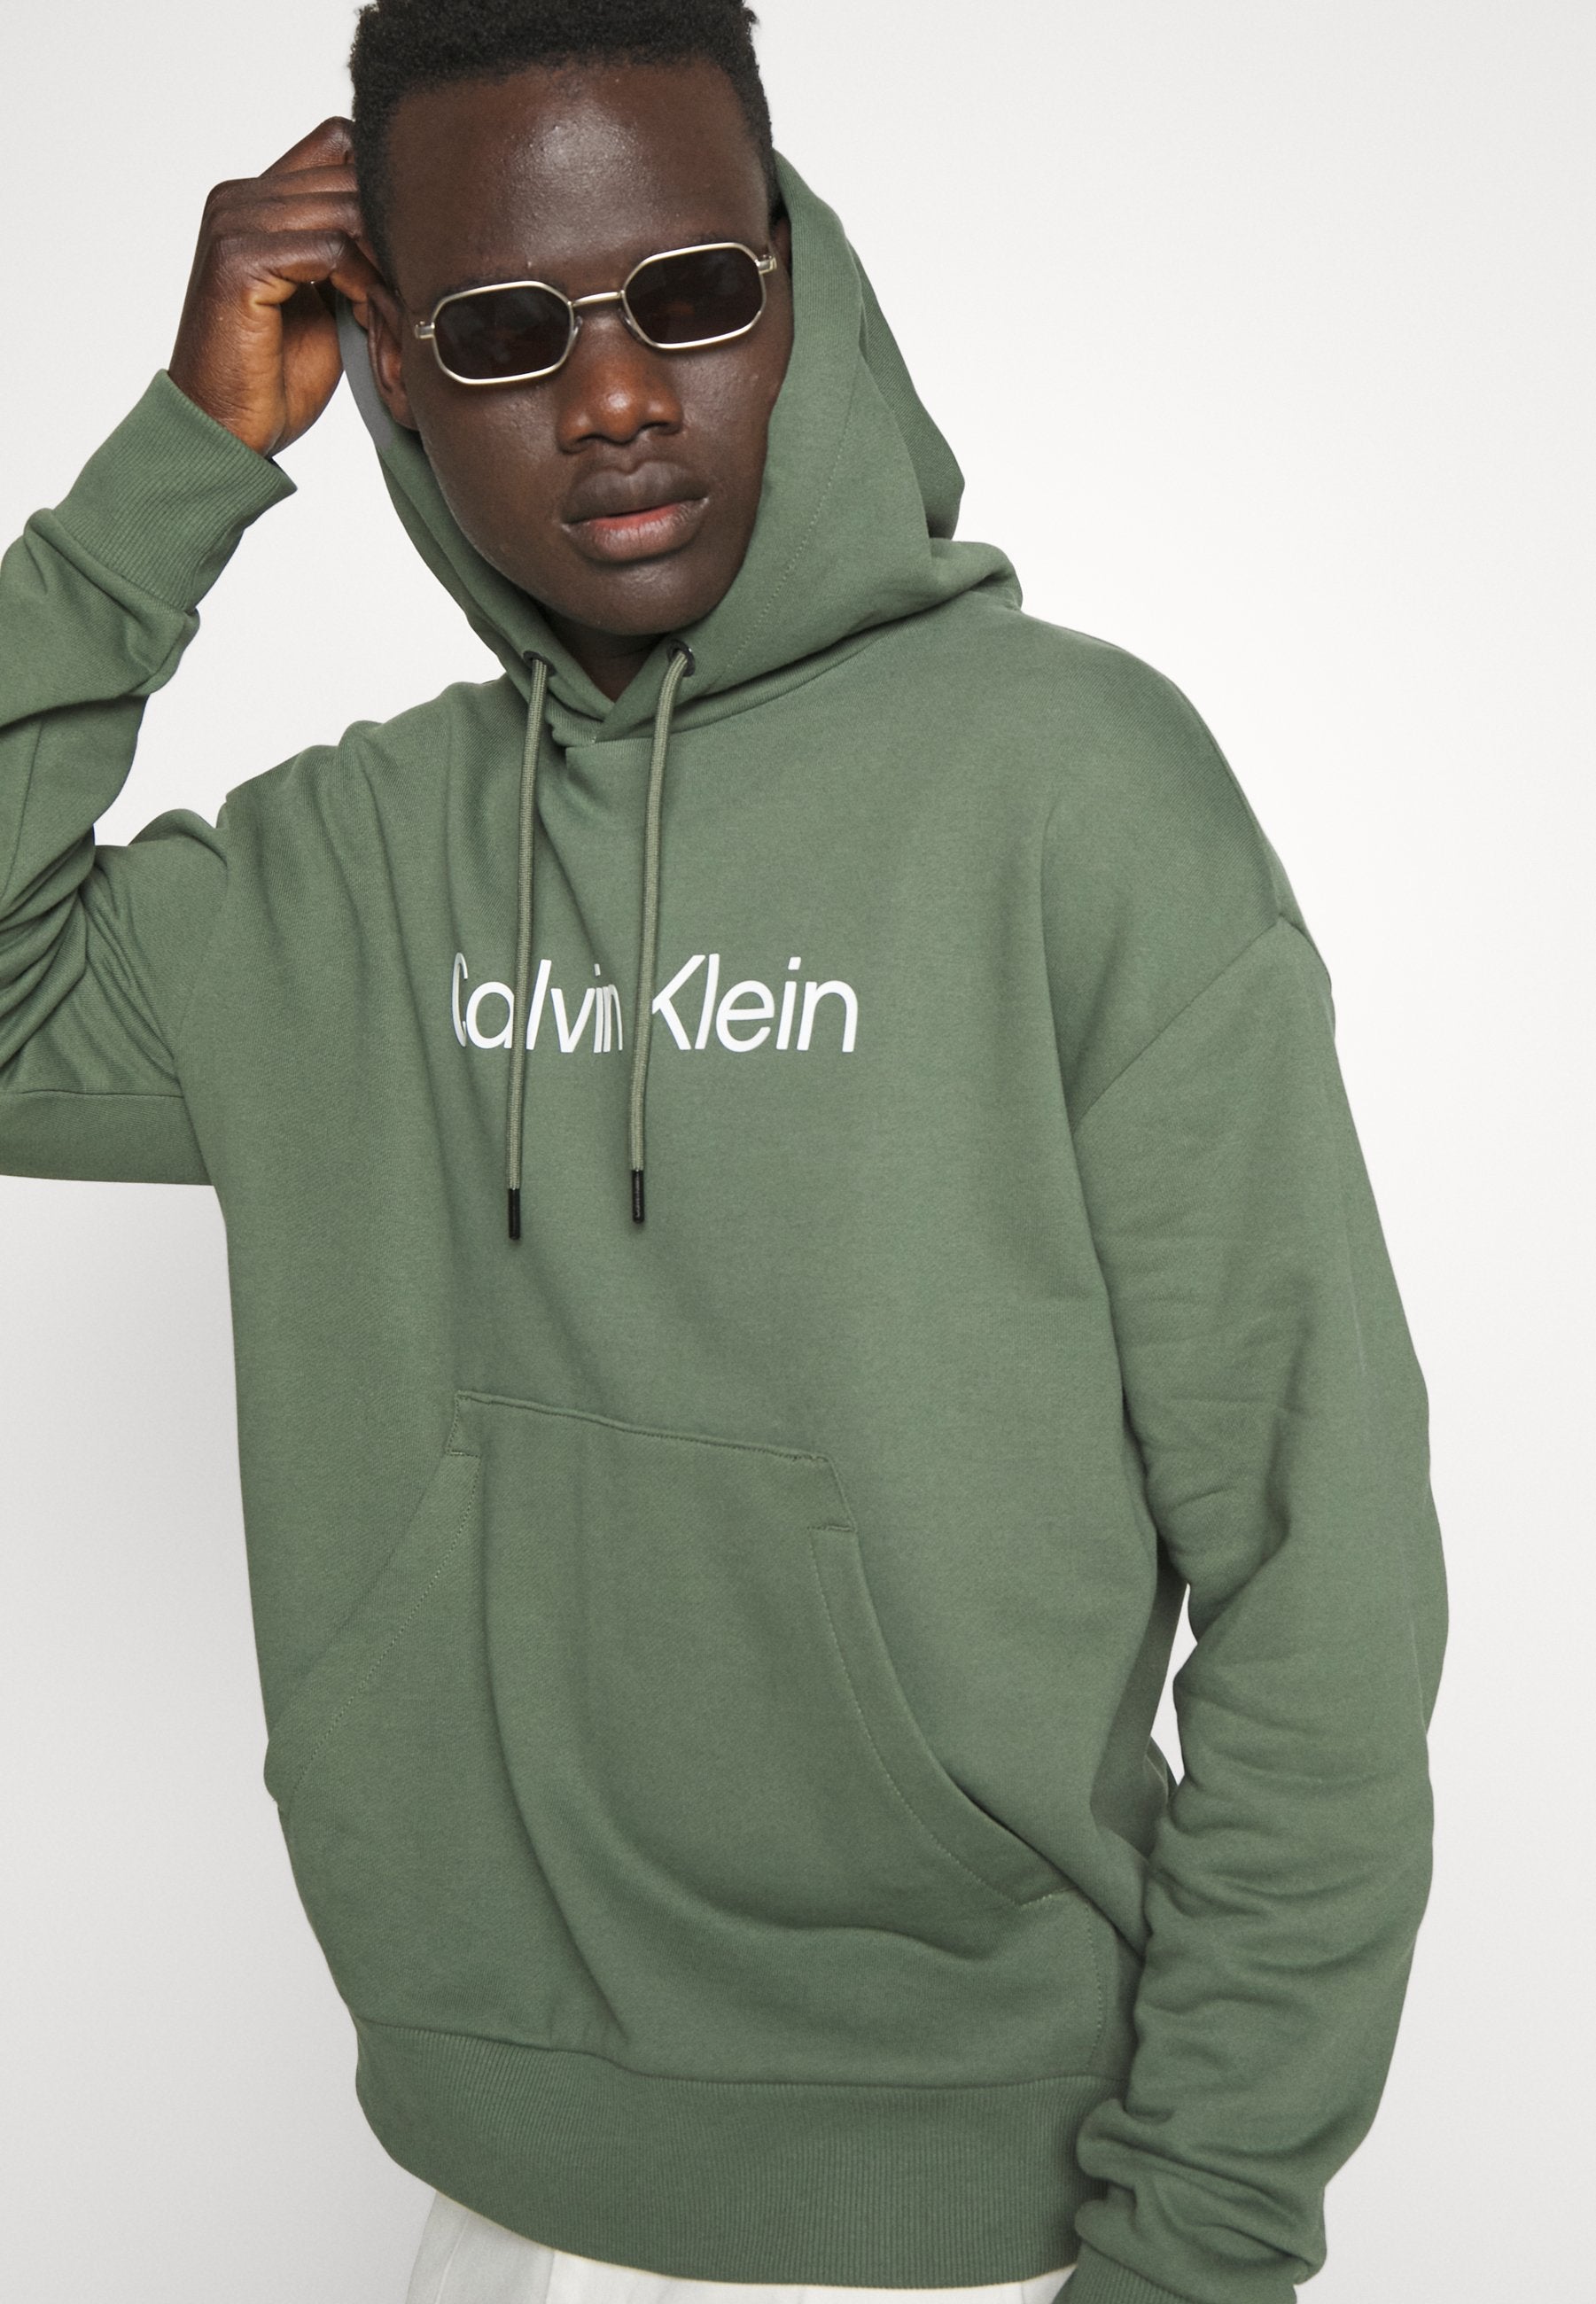 Calvin Klein K111345 Msw Hero Logo Comfort Hoodie Dark Green